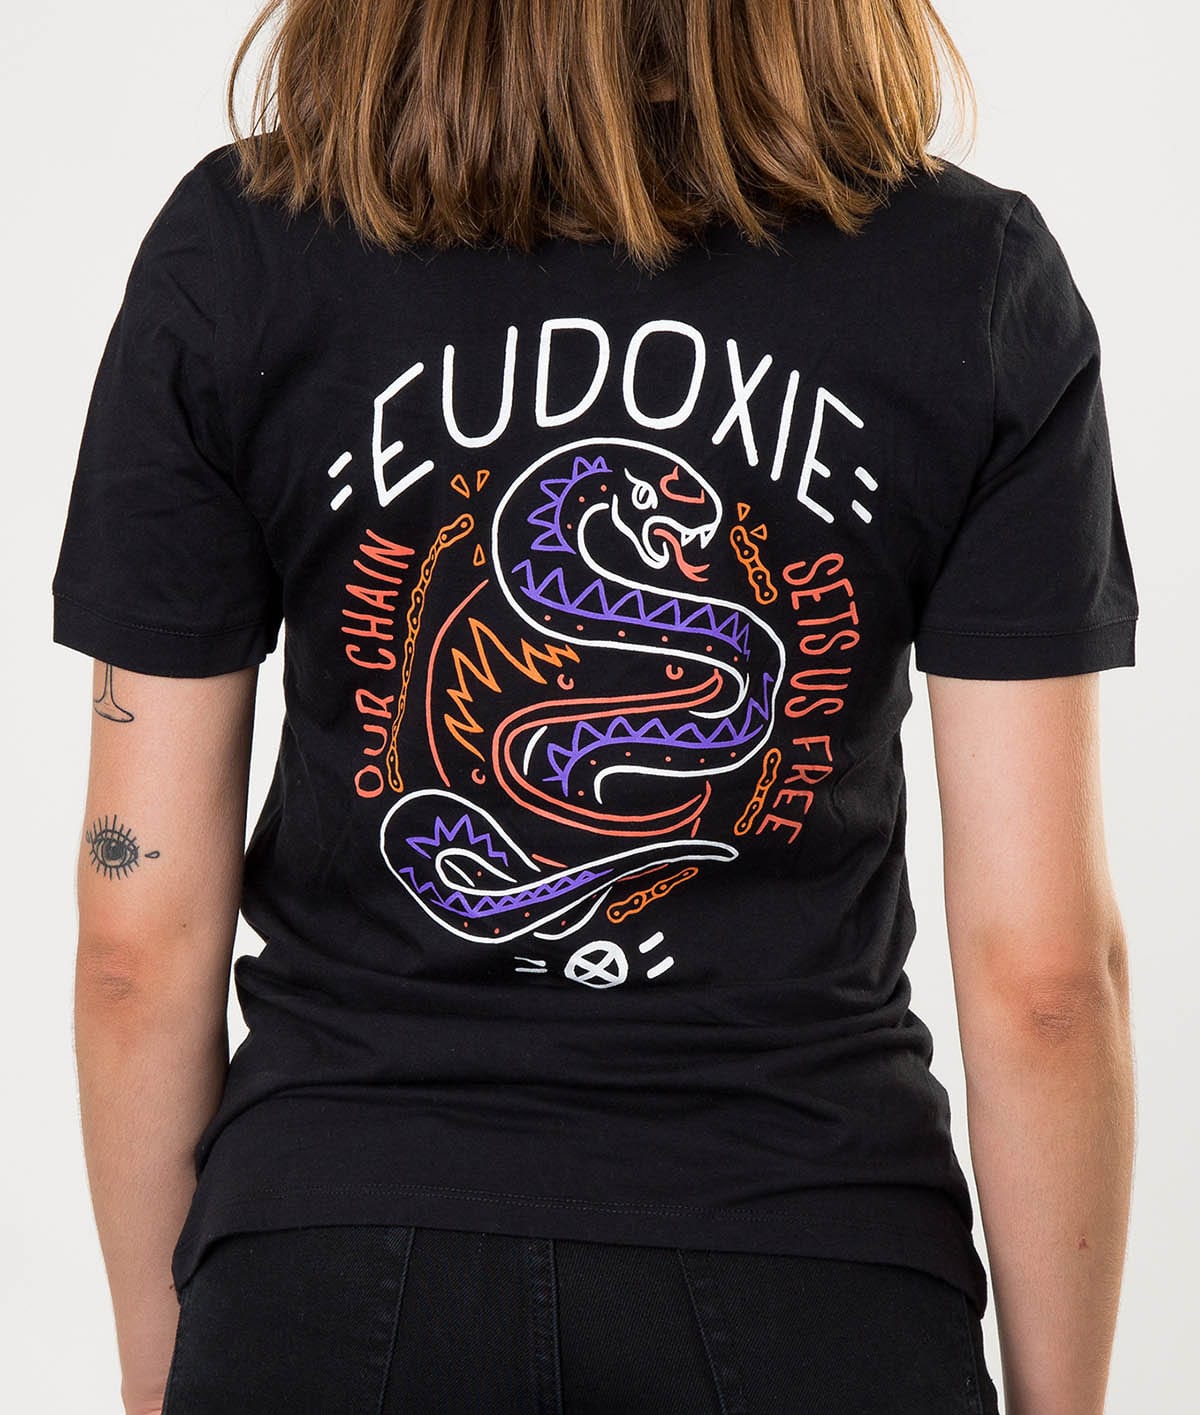 Eudoxie Black Masha T-Shirt - Large - Bild 1